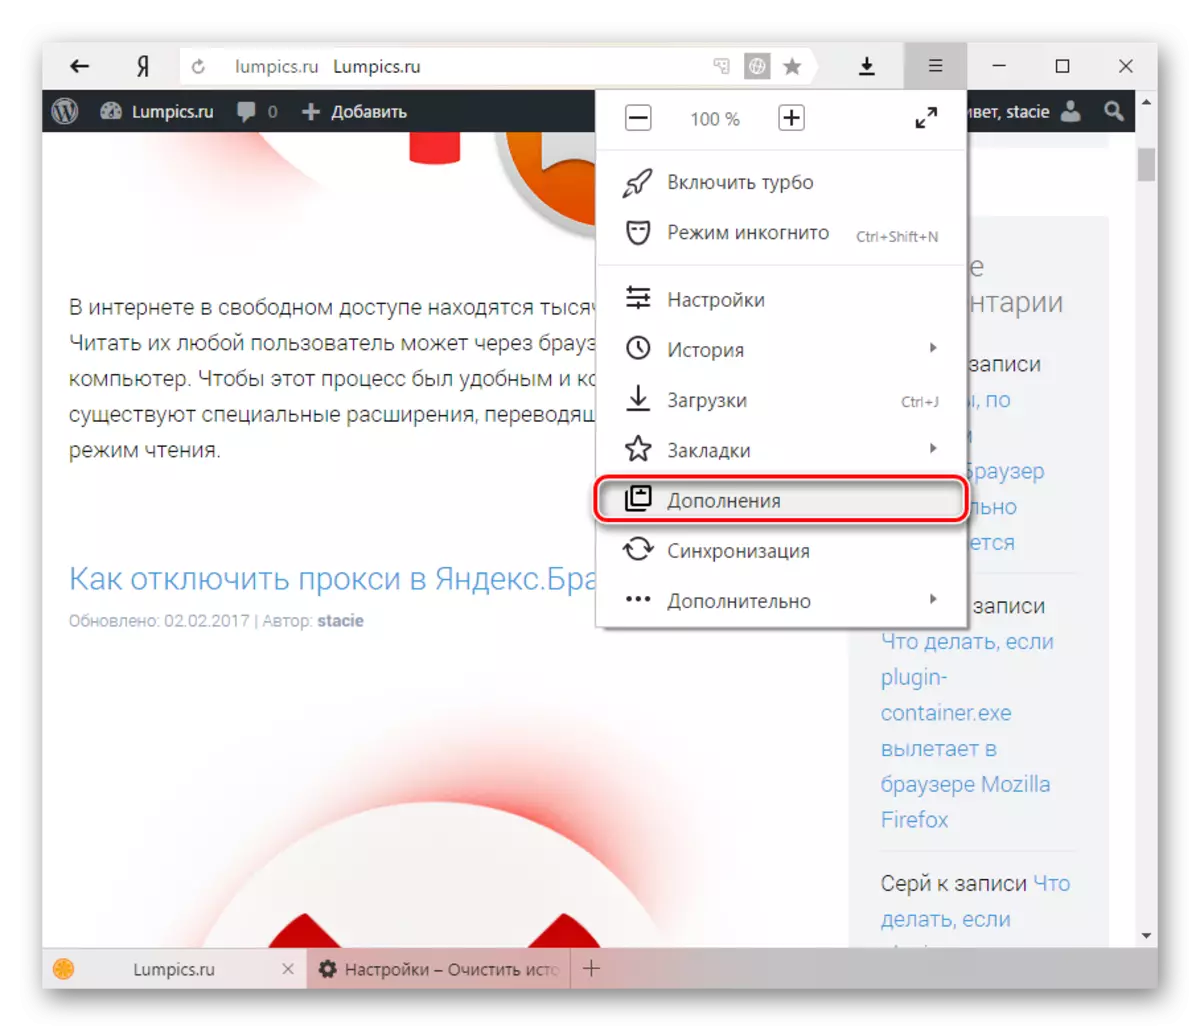 Yandex.Browser মধ্যে সম্পূরকসমূহ